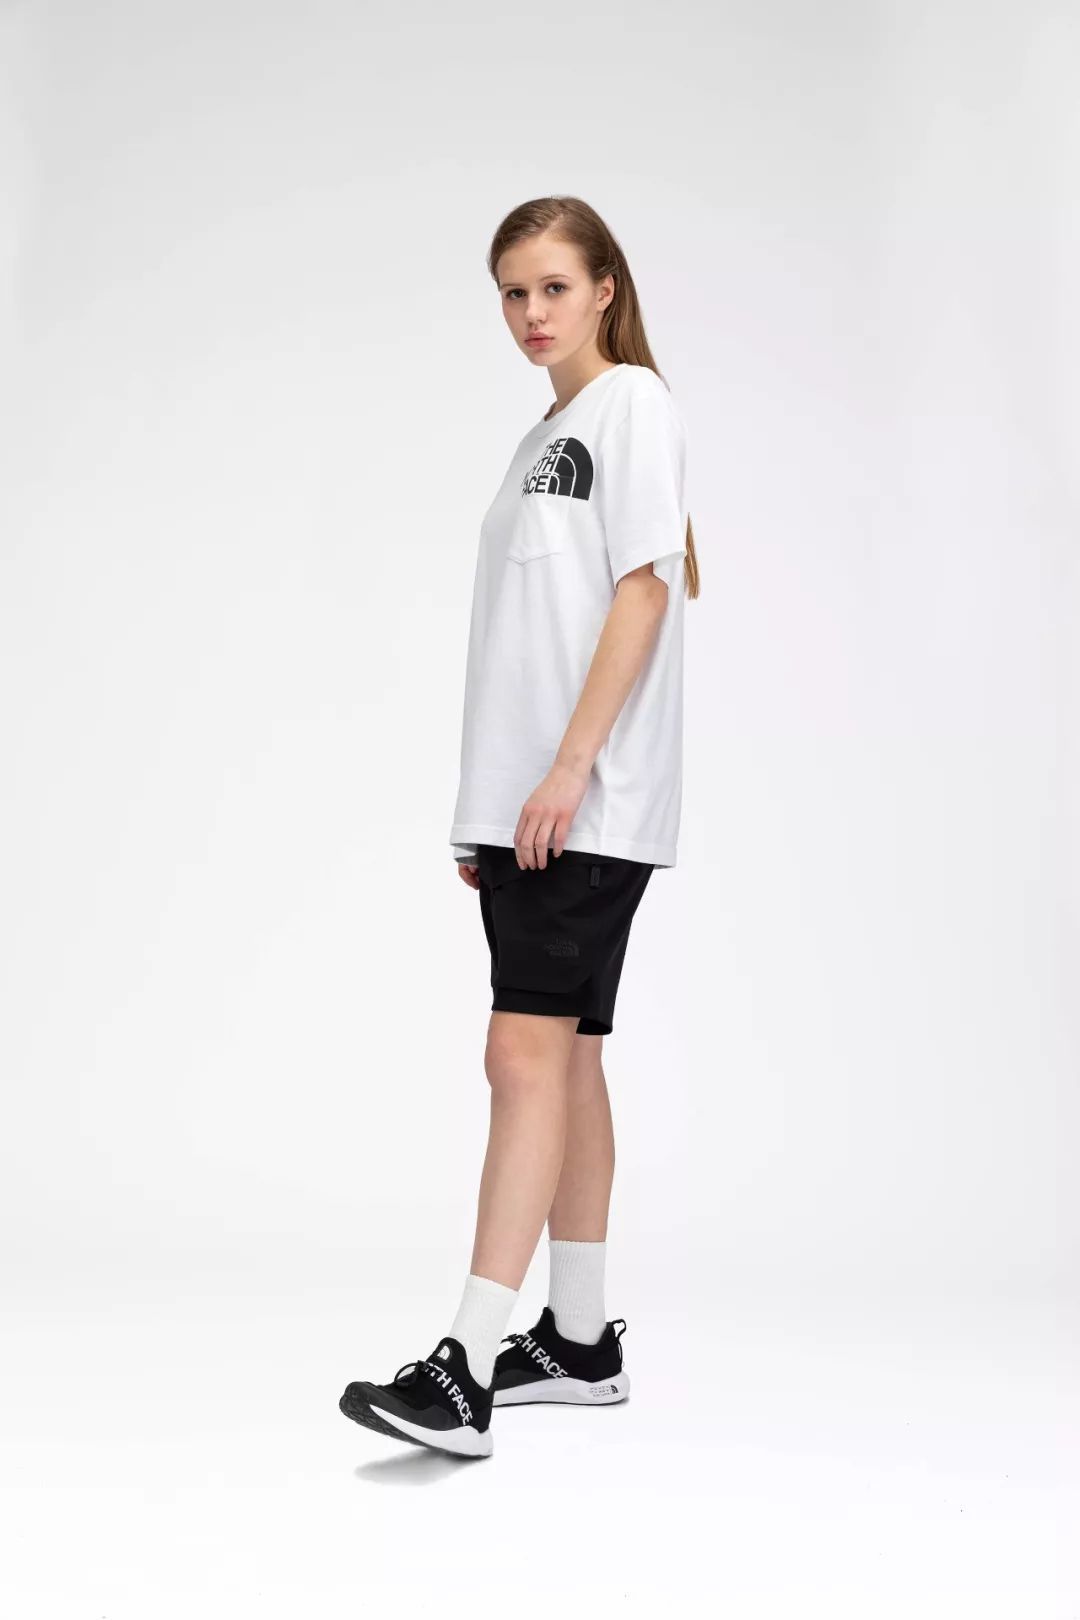 潮闻快食 | Dior x Jordan Brand正式发布服饰与配饰系列;Supreme x MLB联名企划曝光